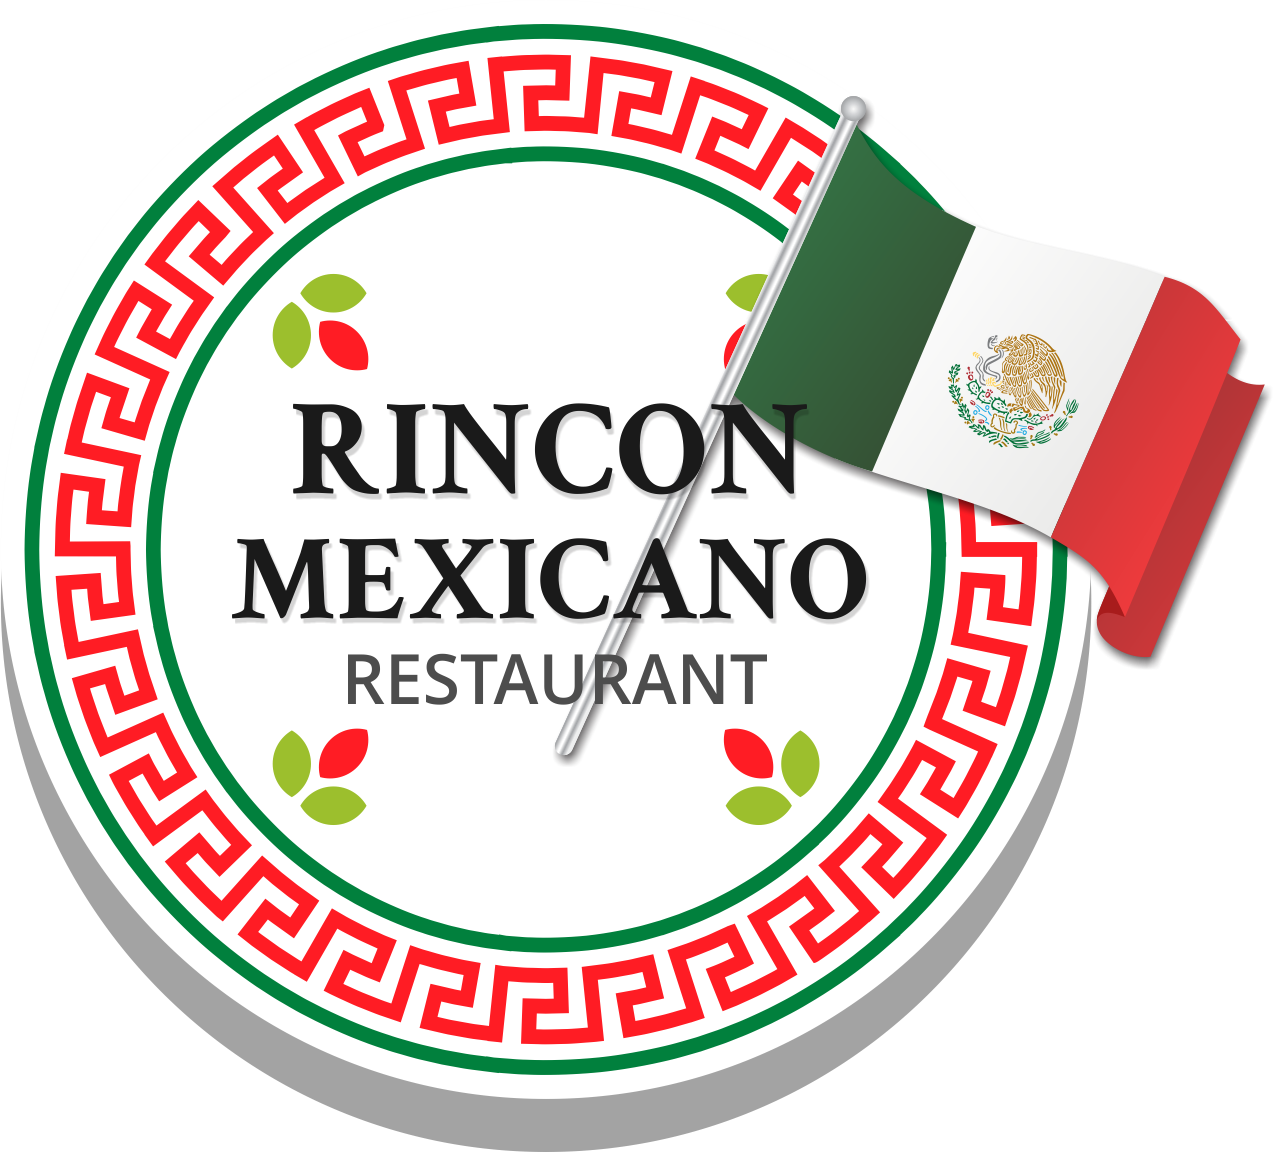 Rincon Mexicano Restaurant